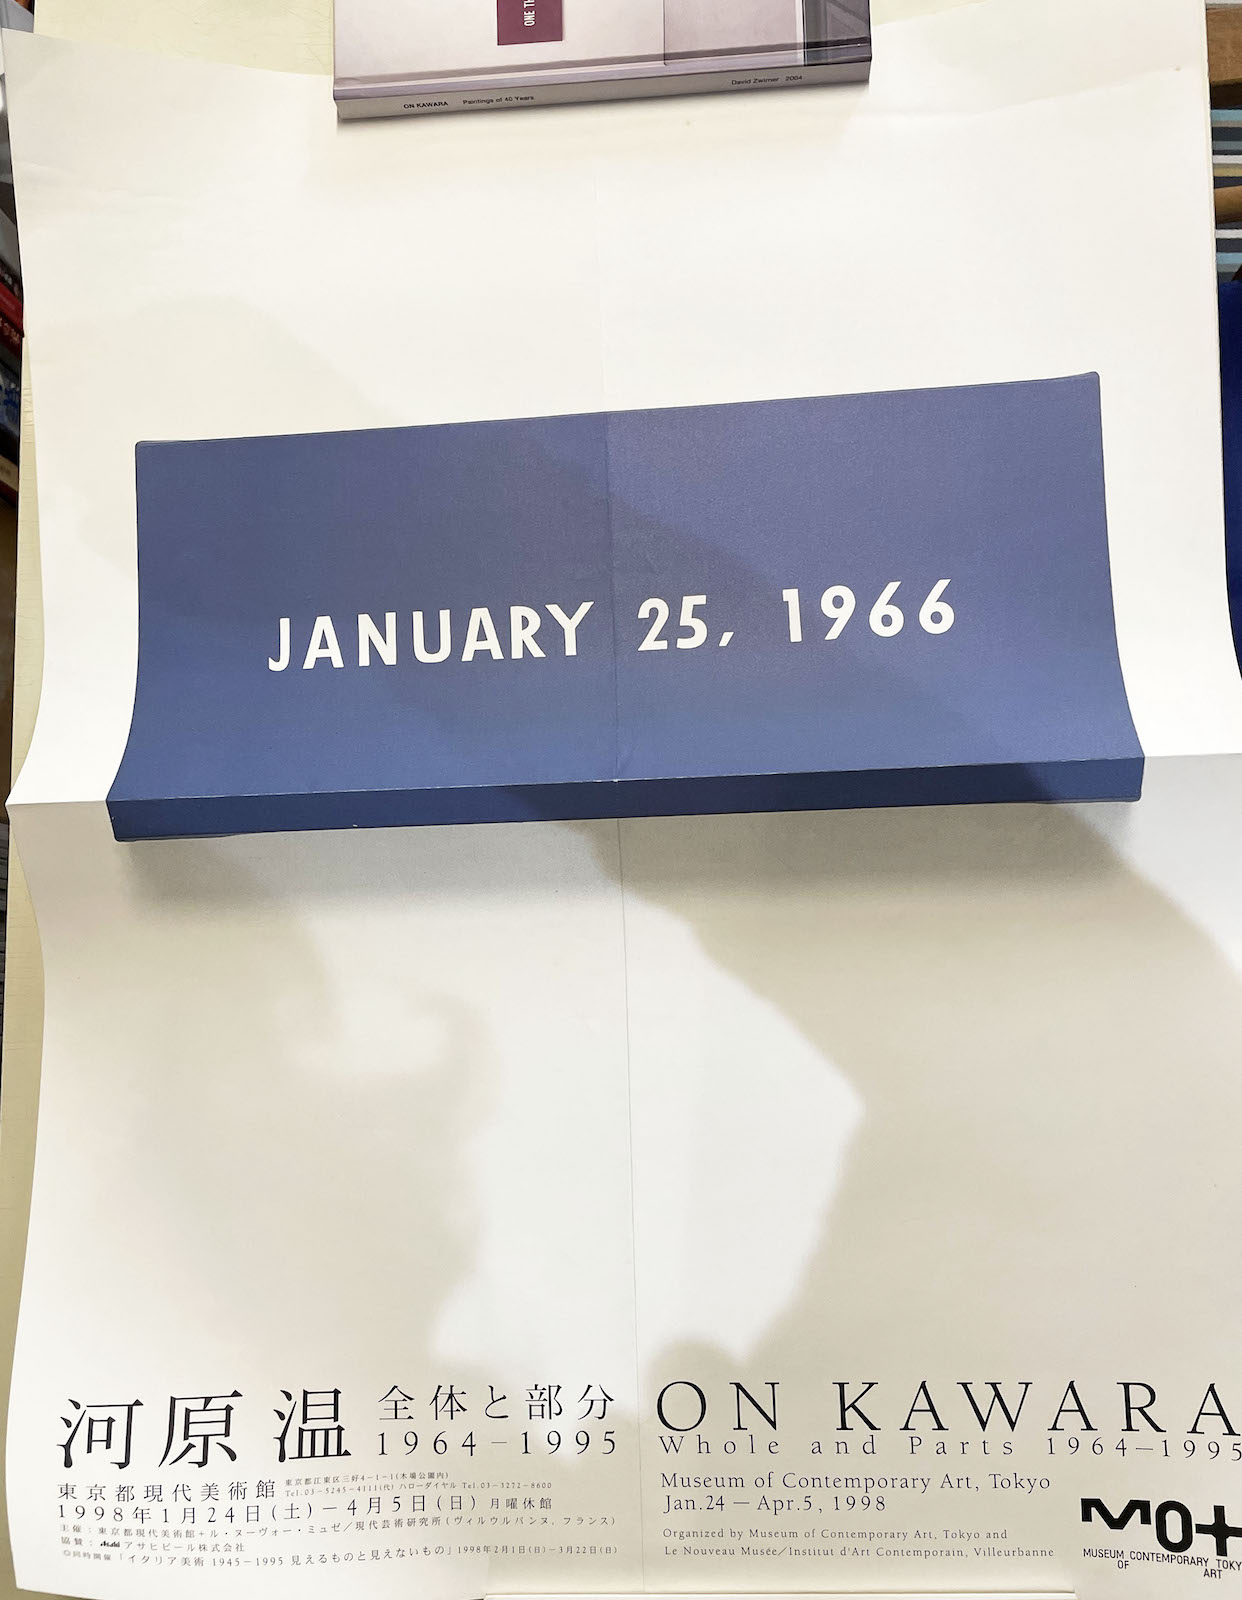 1998年、東京都現代美術館であった「河原温 全体と部分1964-1995」のポスター。美術館から送ってもらったものではなくて、ヤフオクとか買ったと思う。いくらかなぁ。１万円とかにして、売れなくてもいいことにしようかな。